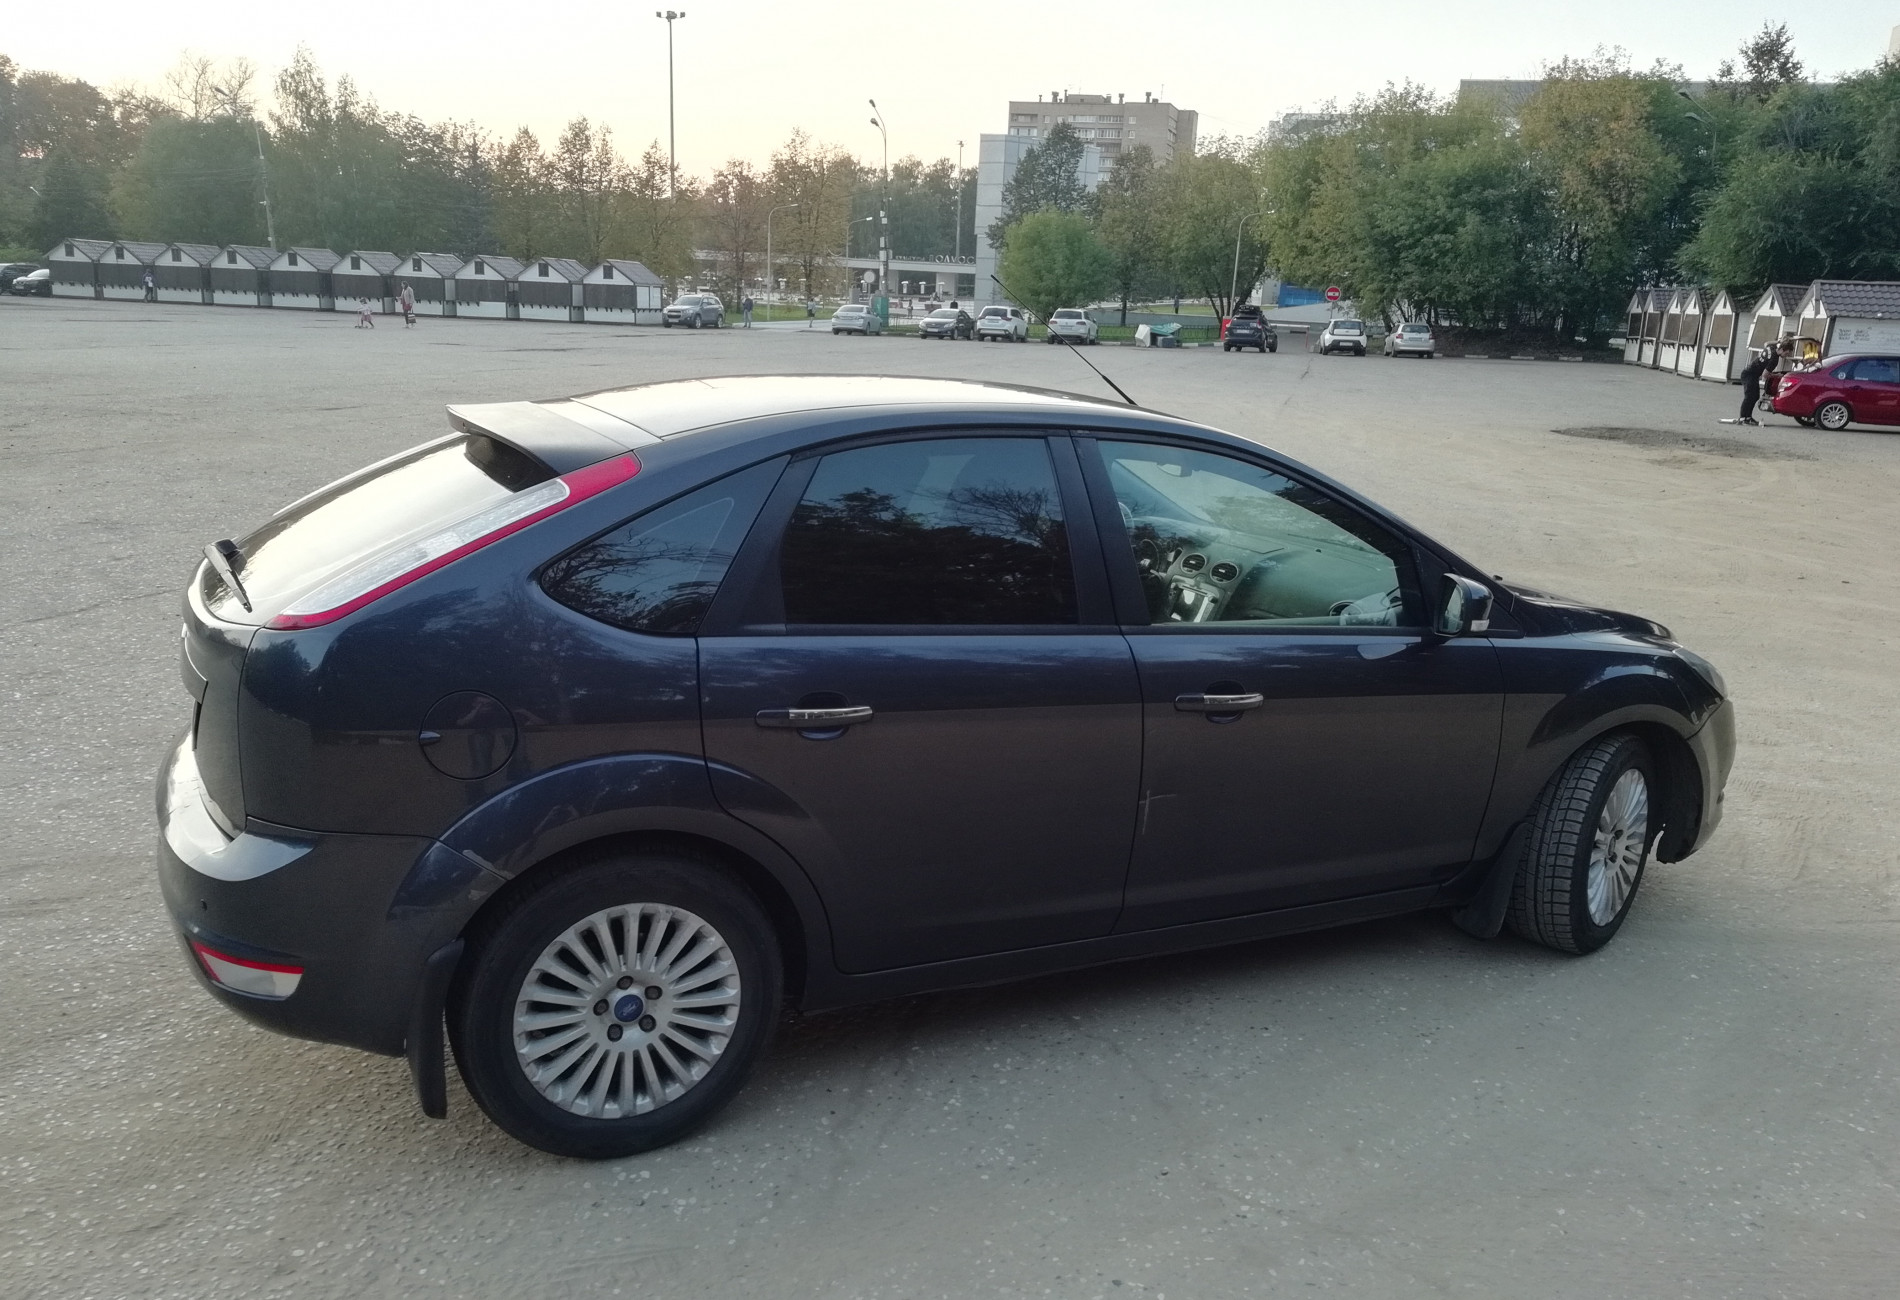 Аренда ford focus эконом класса 2010 года в городе Москва Пятницкое шоссе от 1600 руб./сутки, передний привод, двигатель: бензин, объем 1.6 литров, ОСАГО (Мультидрайв), без водителя, недорого, вид 2 - RentRide